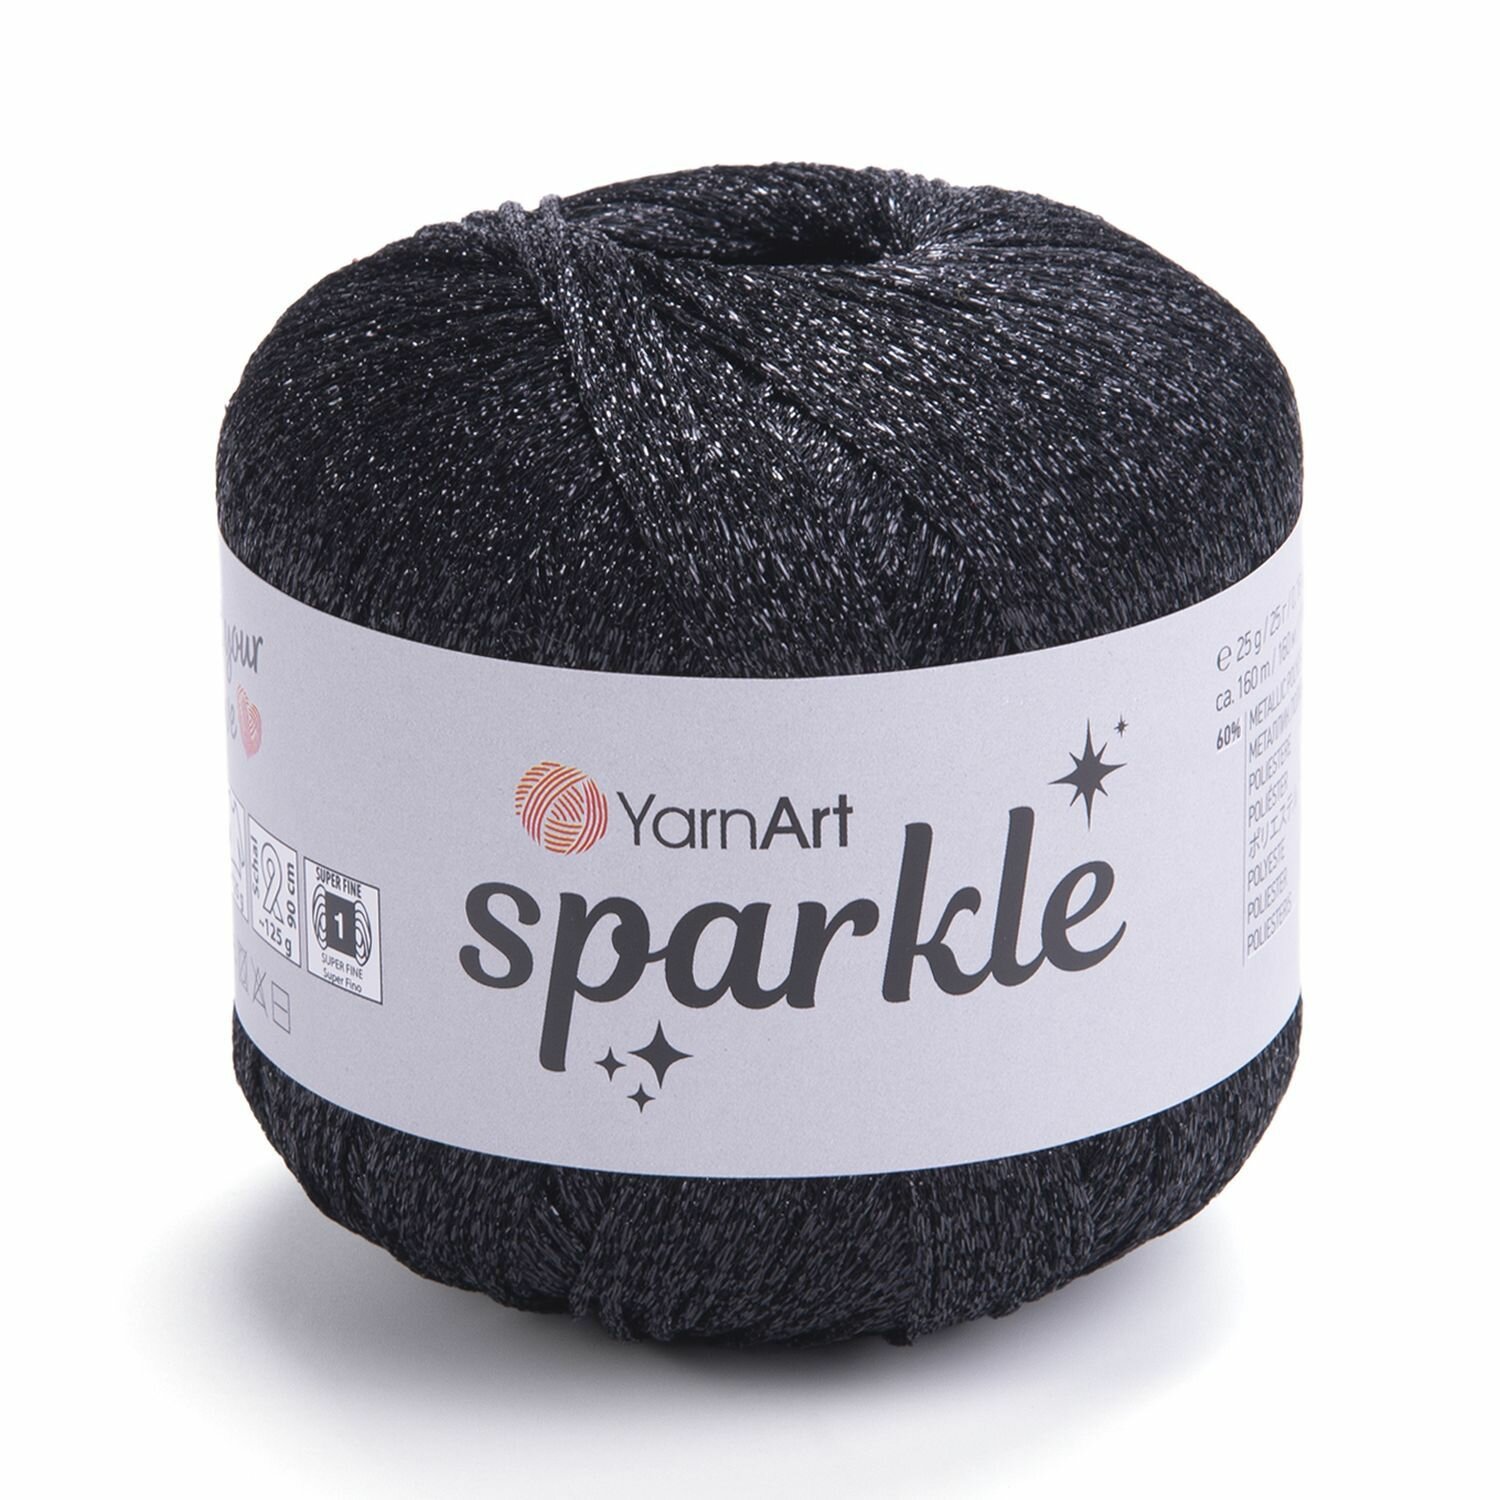 Пряжа Sparkle YarnArt, черный - 1360, 60% полиэстер металлик, 40% полиамид, 6 мотков, 25 г, 160 м.